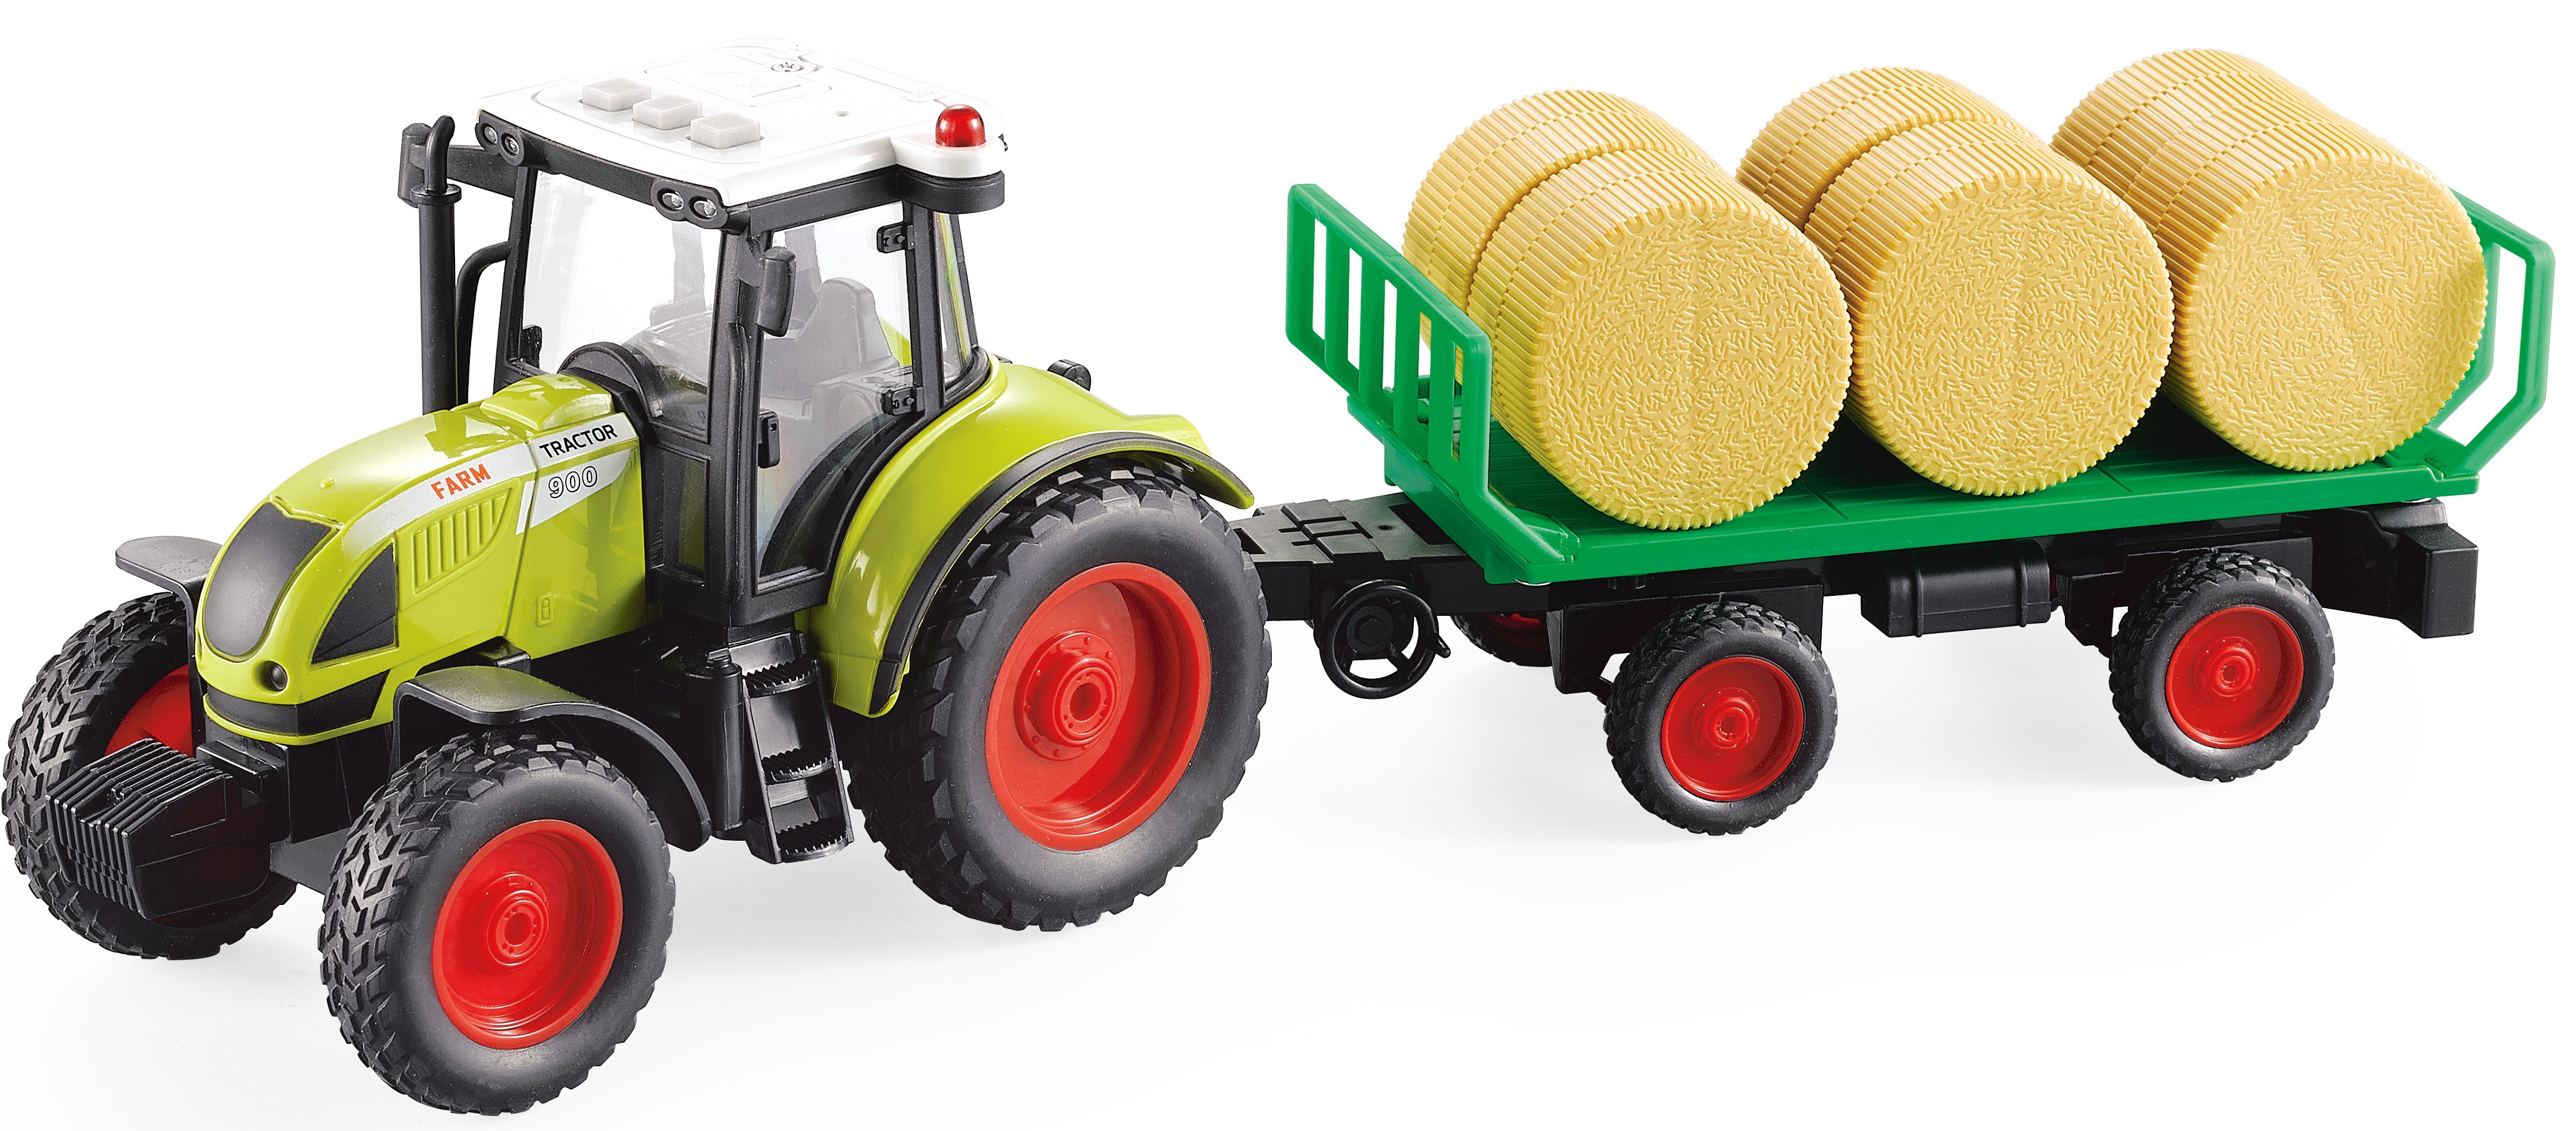 Sparkys Traktor s valníkem a balíky slámy 1:16